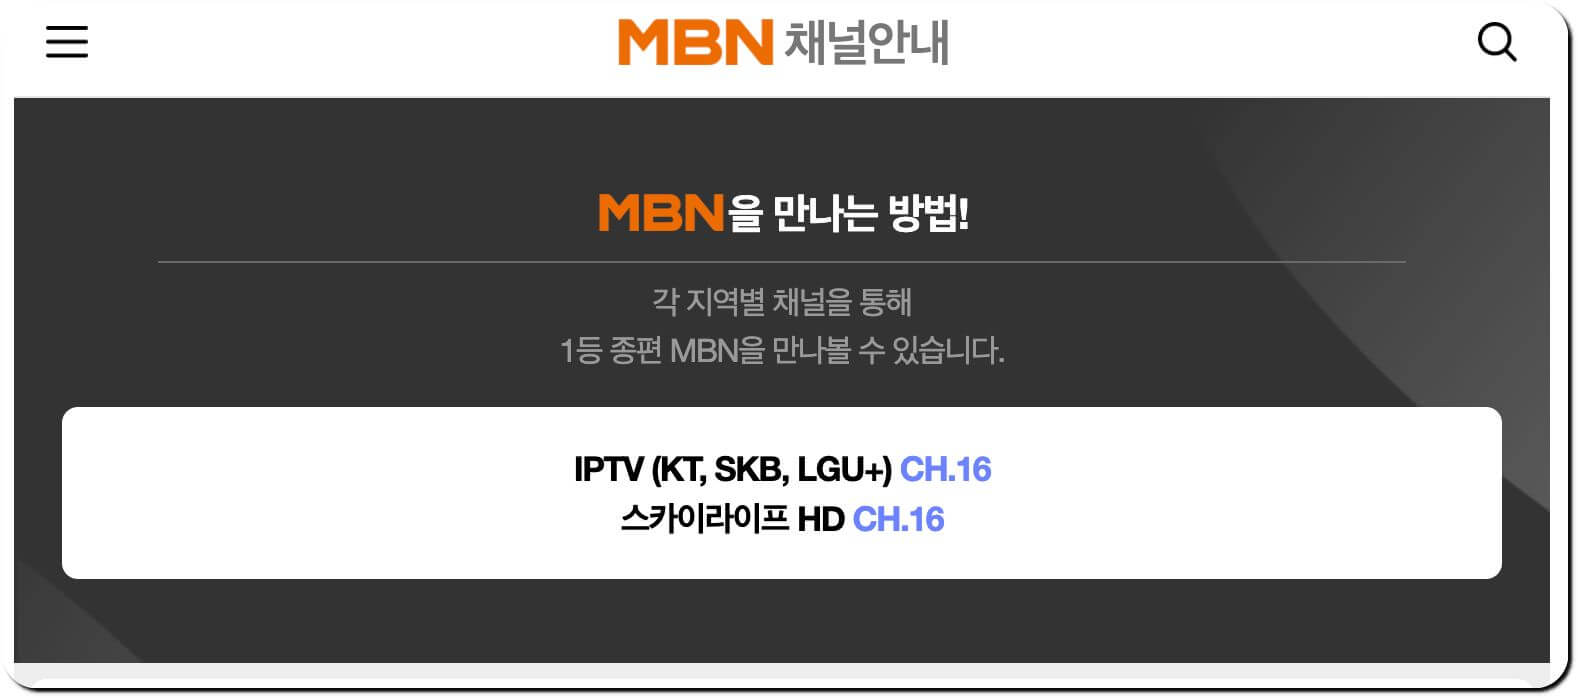 MBN 채널번호 확인 사이트